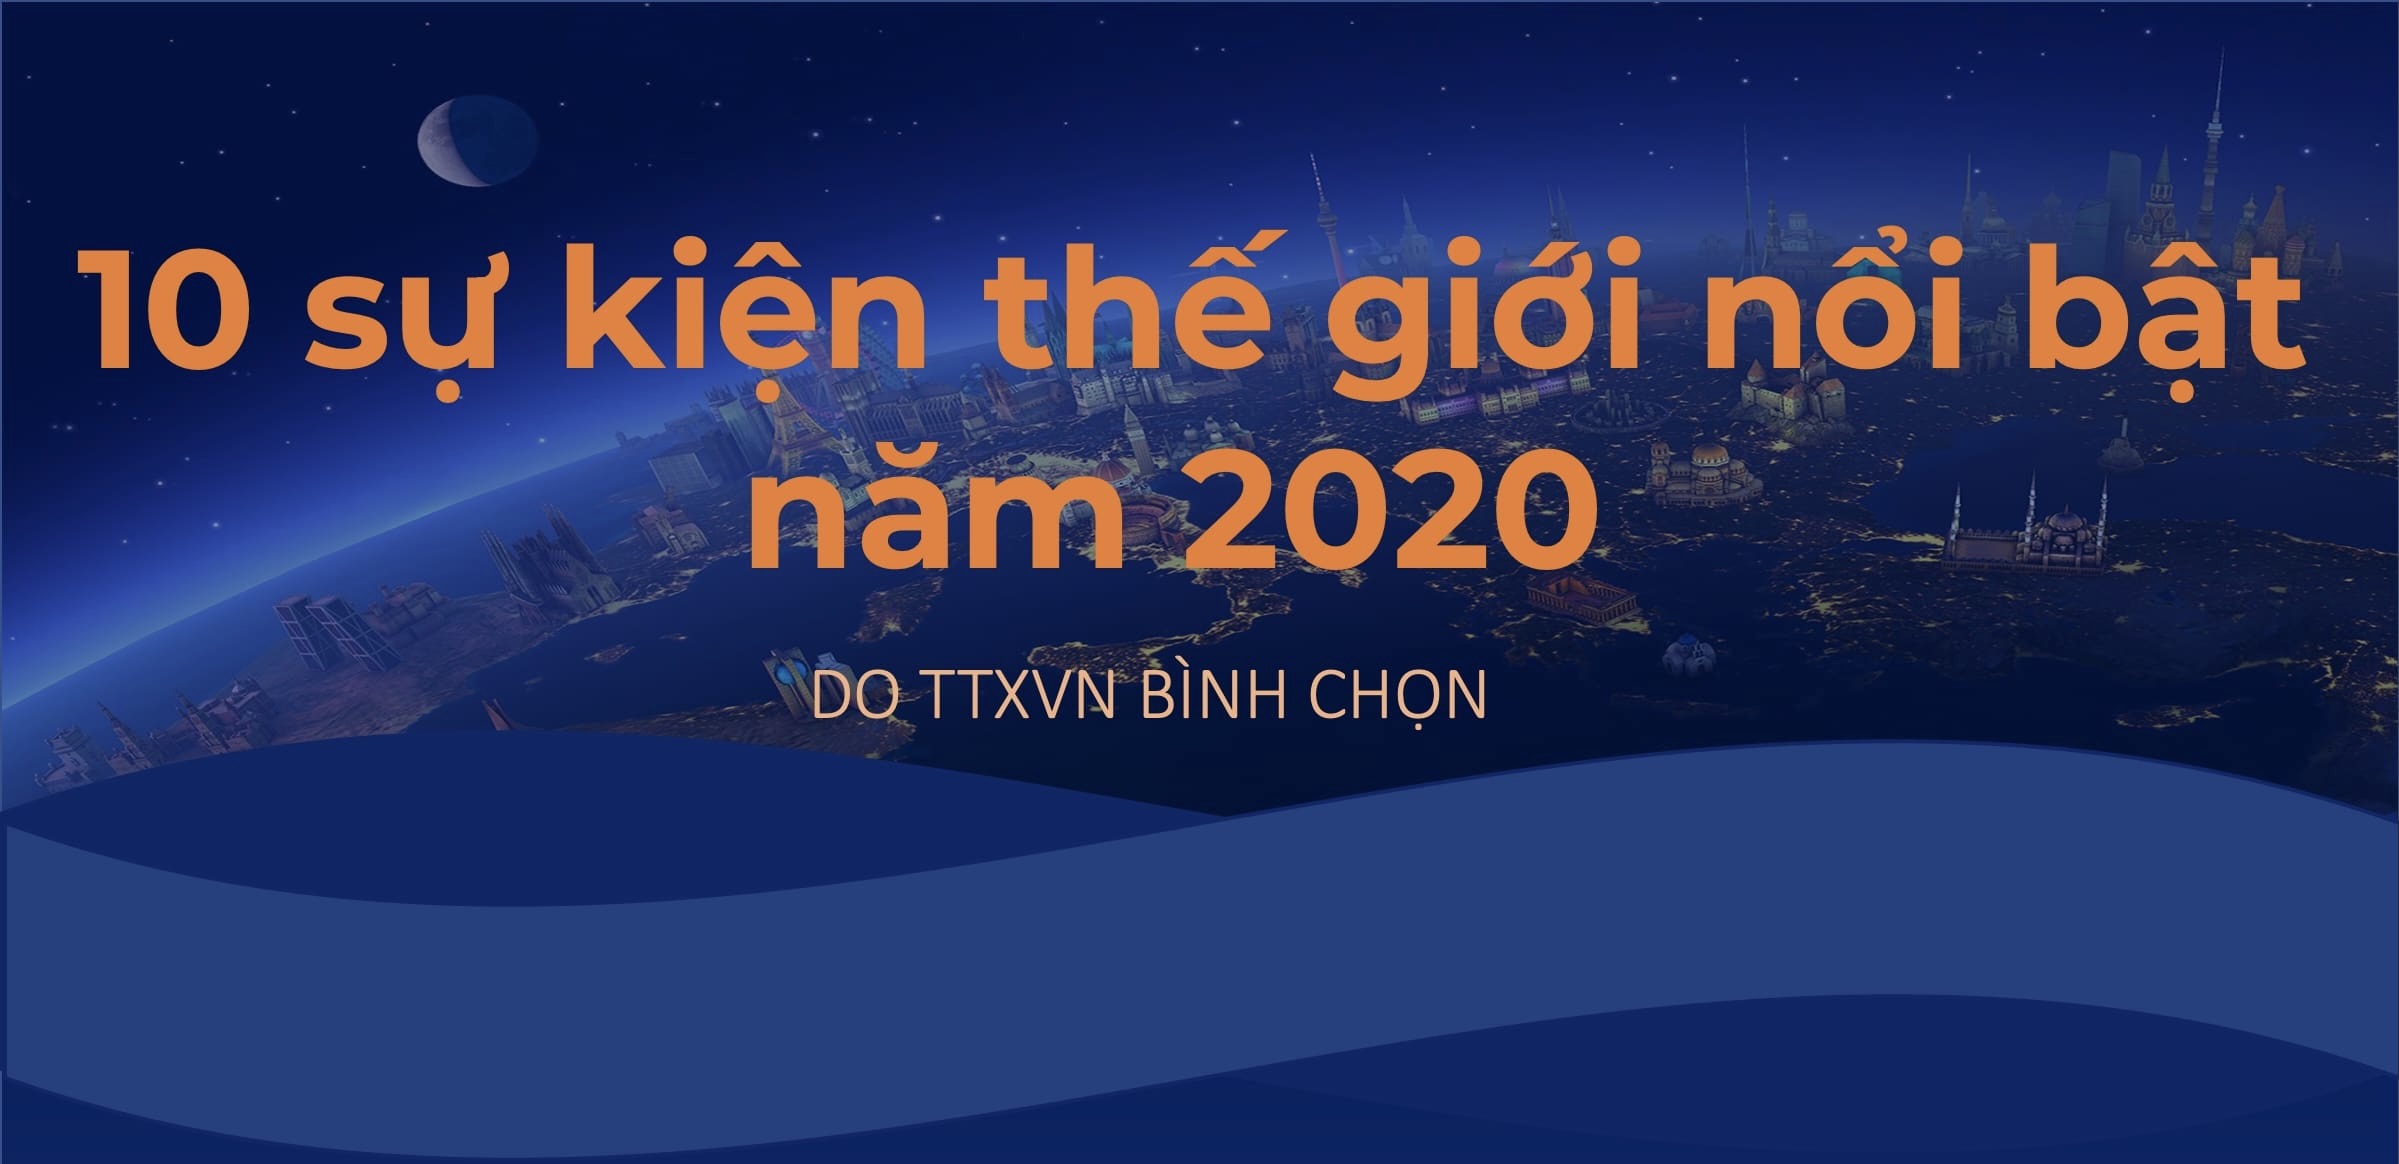 10 sự kiện thế giới nổi bật năm 2020 do TTXVN bình chọn